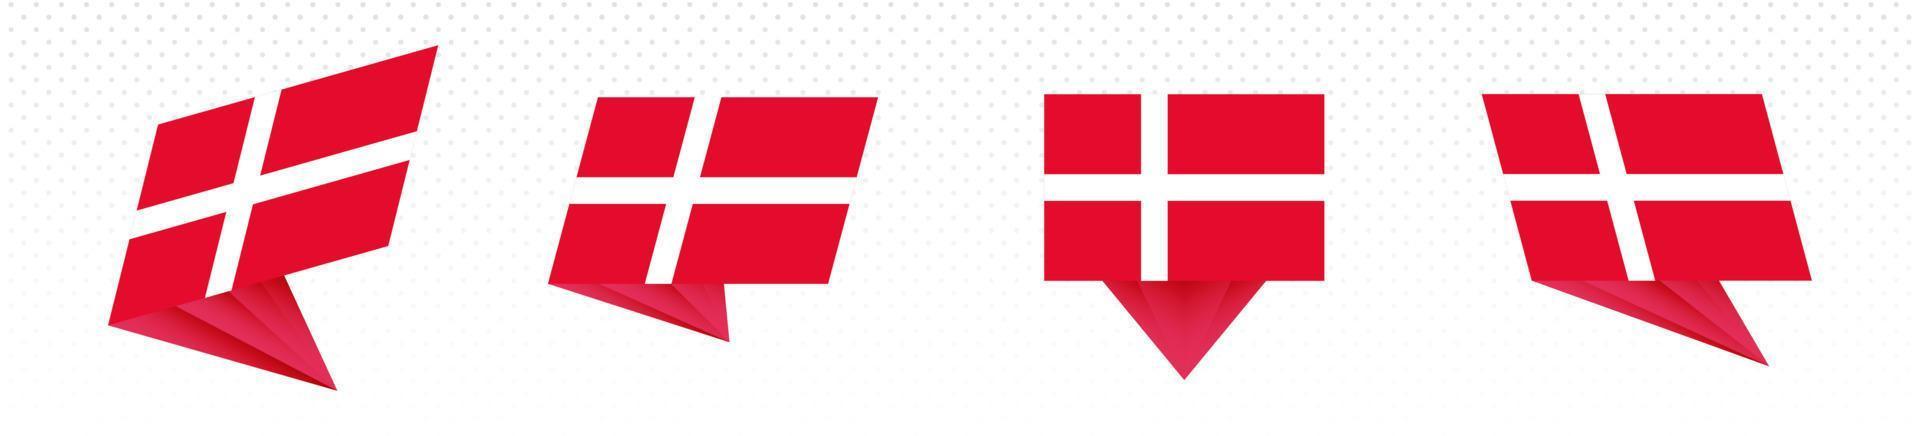 bandeira da Dinamarca em design abstrato moderno, conjunto de bandeiras. vetor